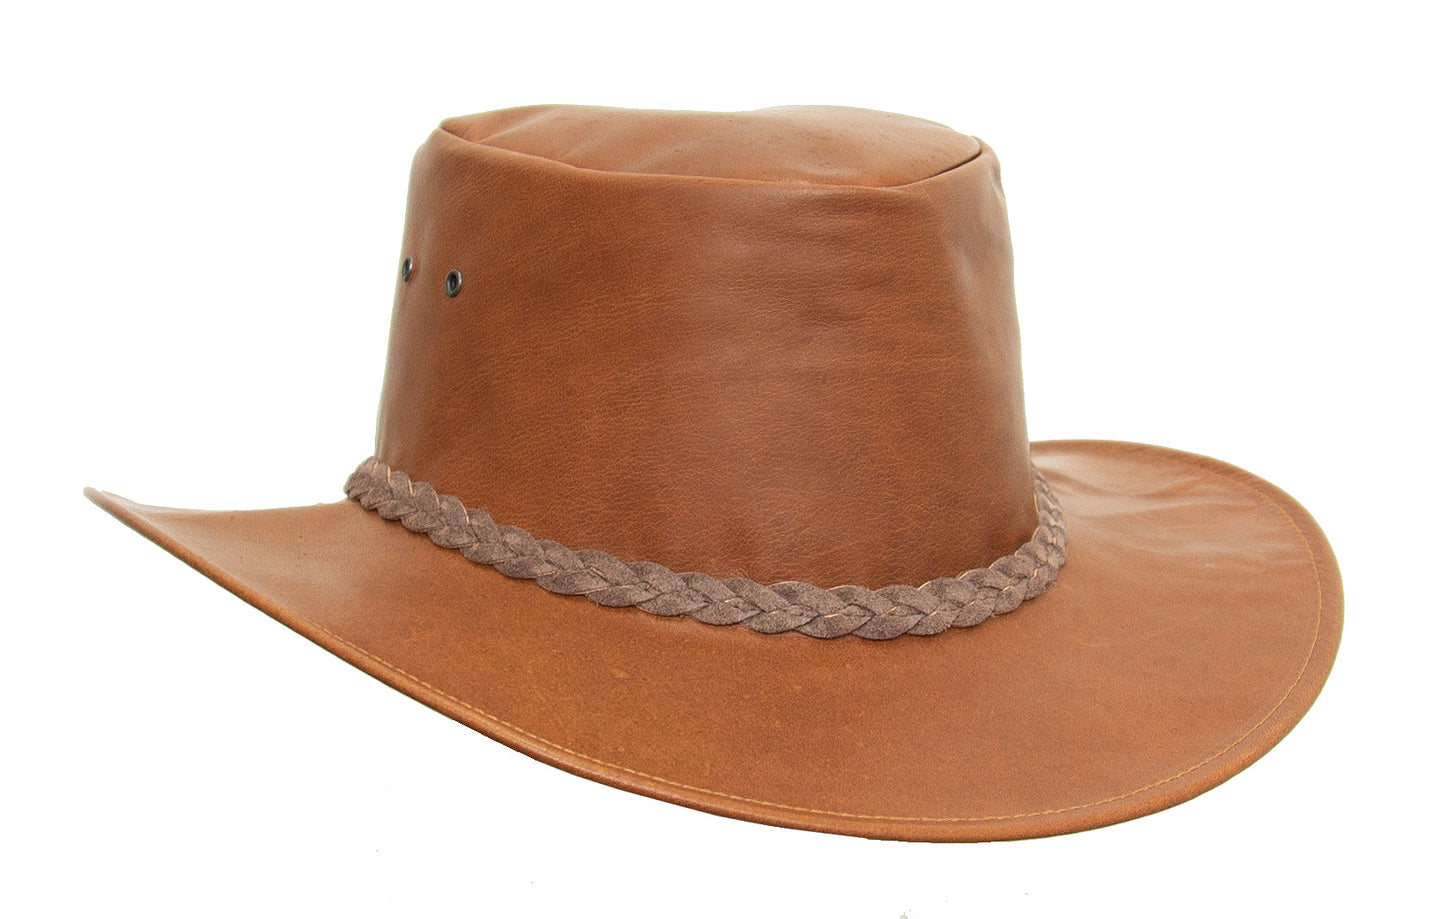 Ultraleichter Cowboy-Hut für Damen und Herren aus Känguru-Leder in braun und rust, Sonnenschutz für Damen und Herren